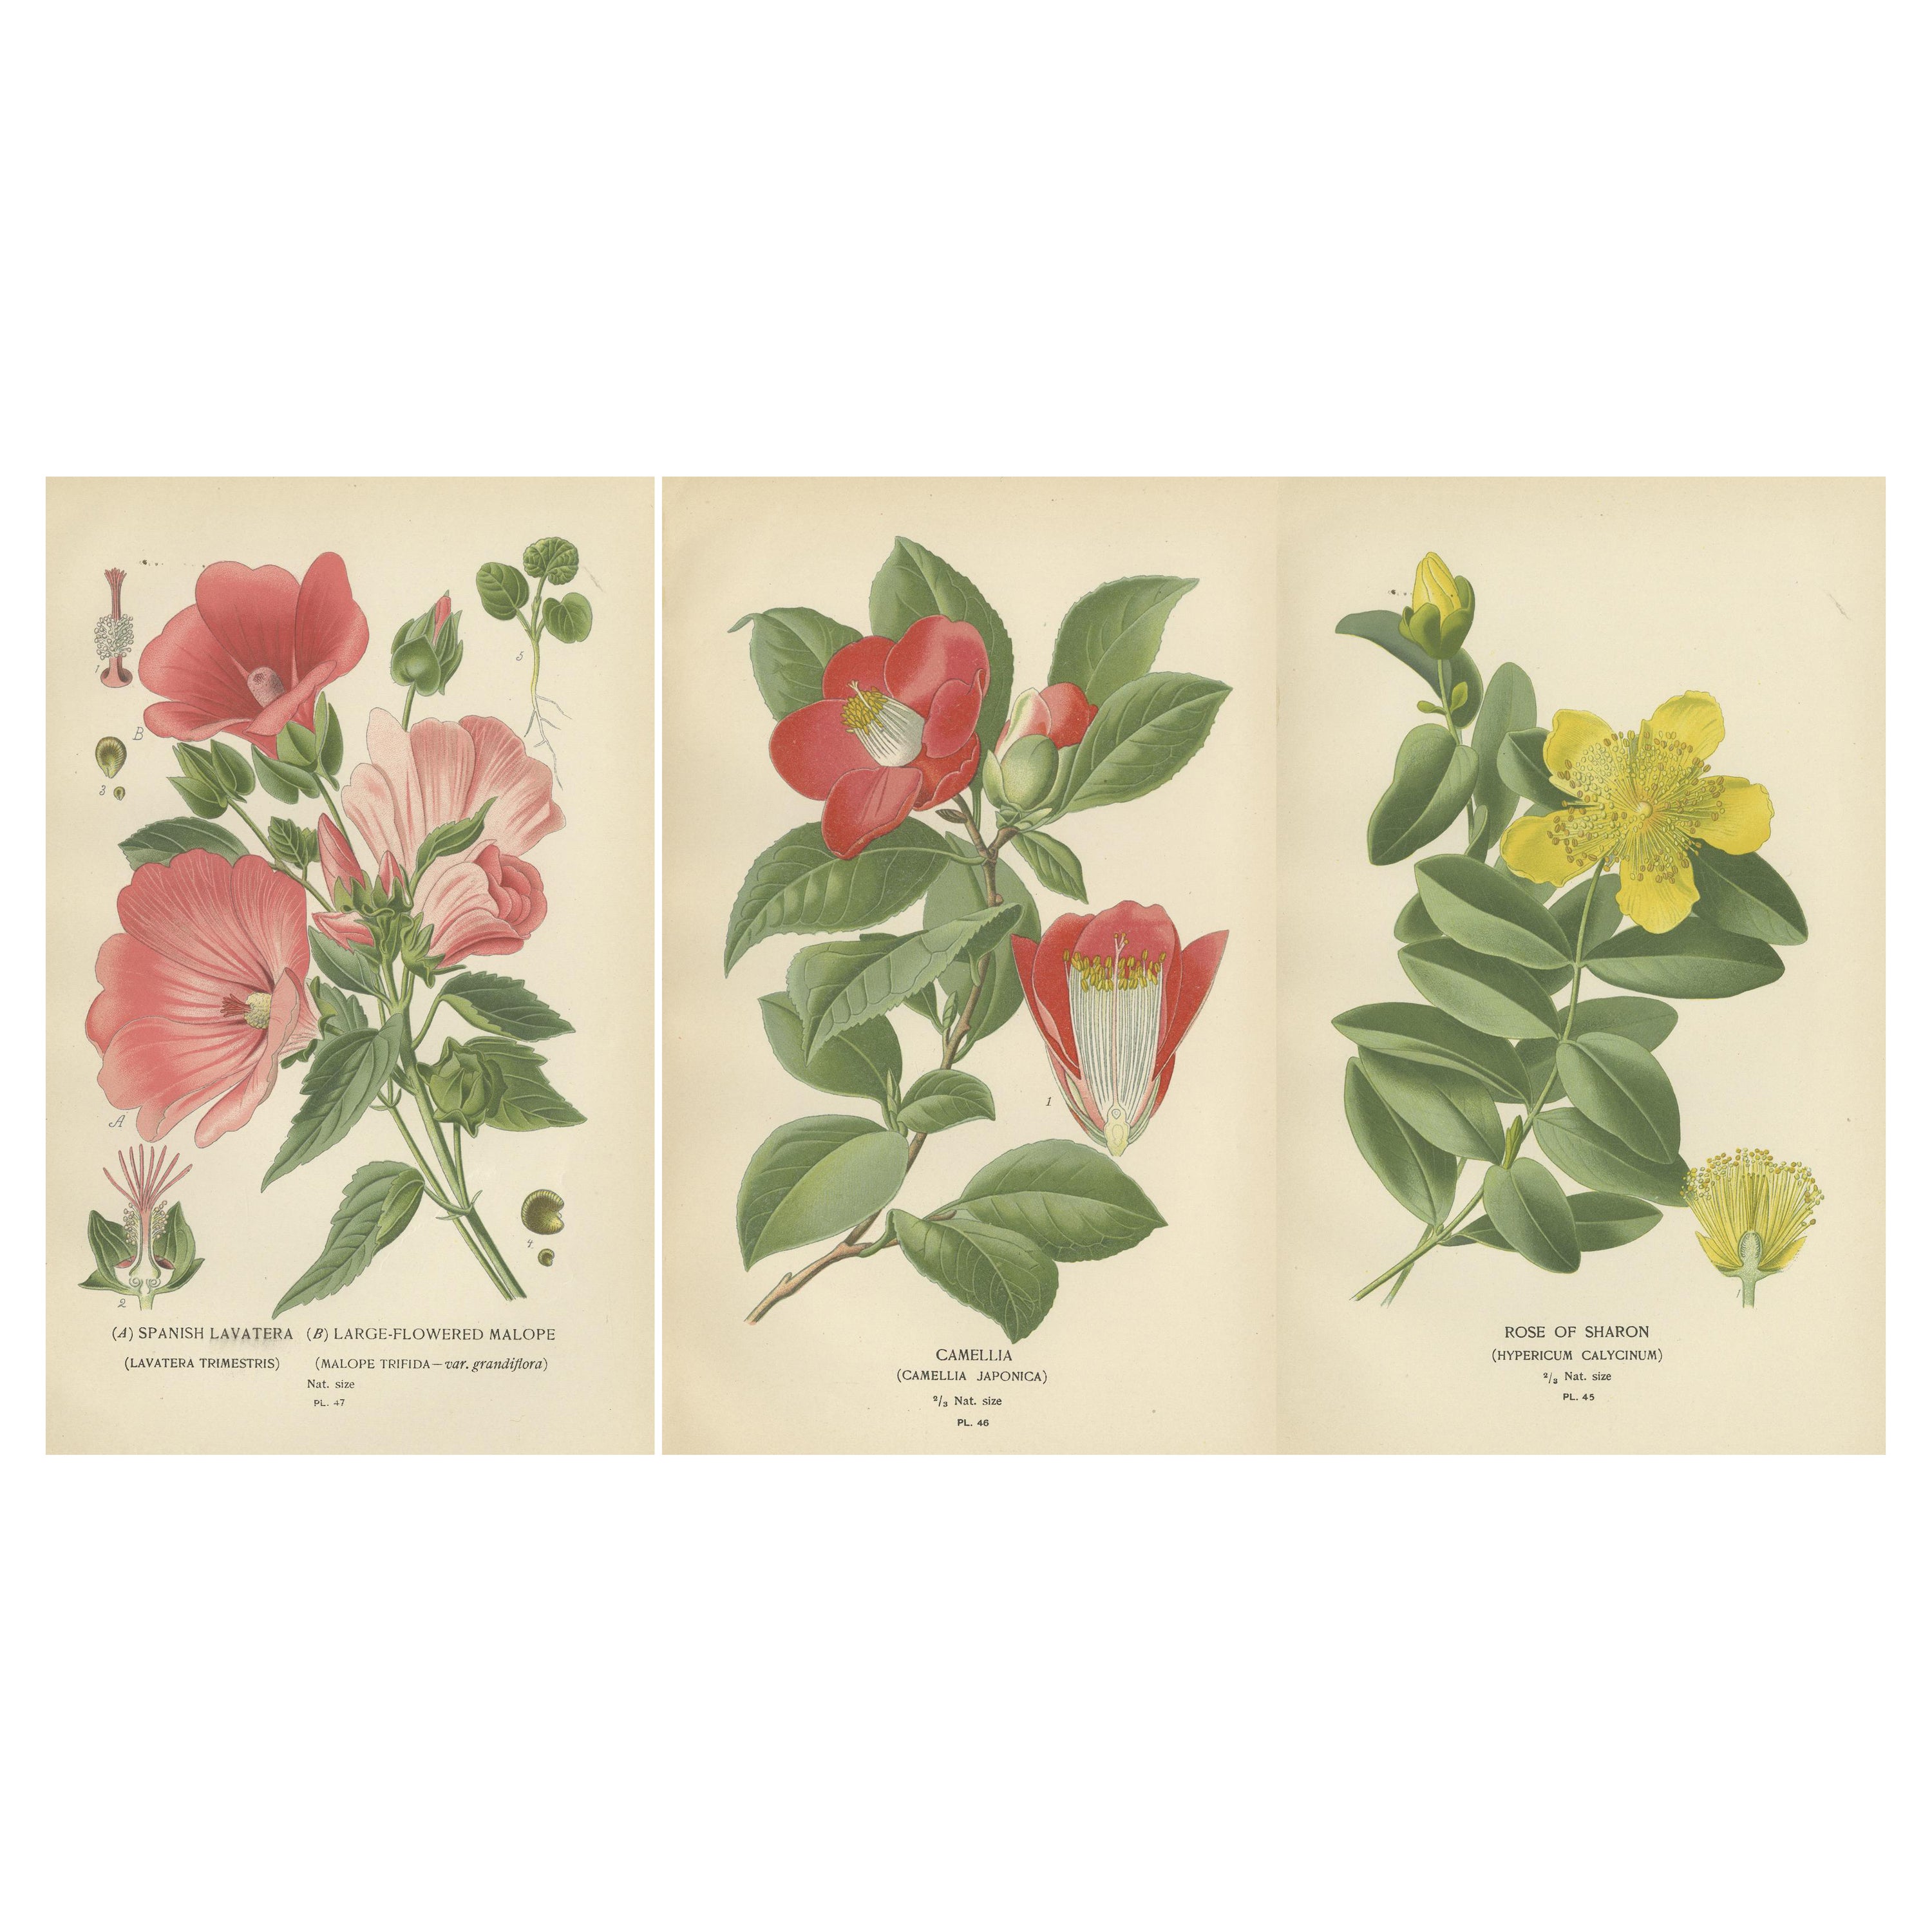 Botanical Elegance: A Triptychon der Blumenkunst des 19. Jahrhunderts, 1896